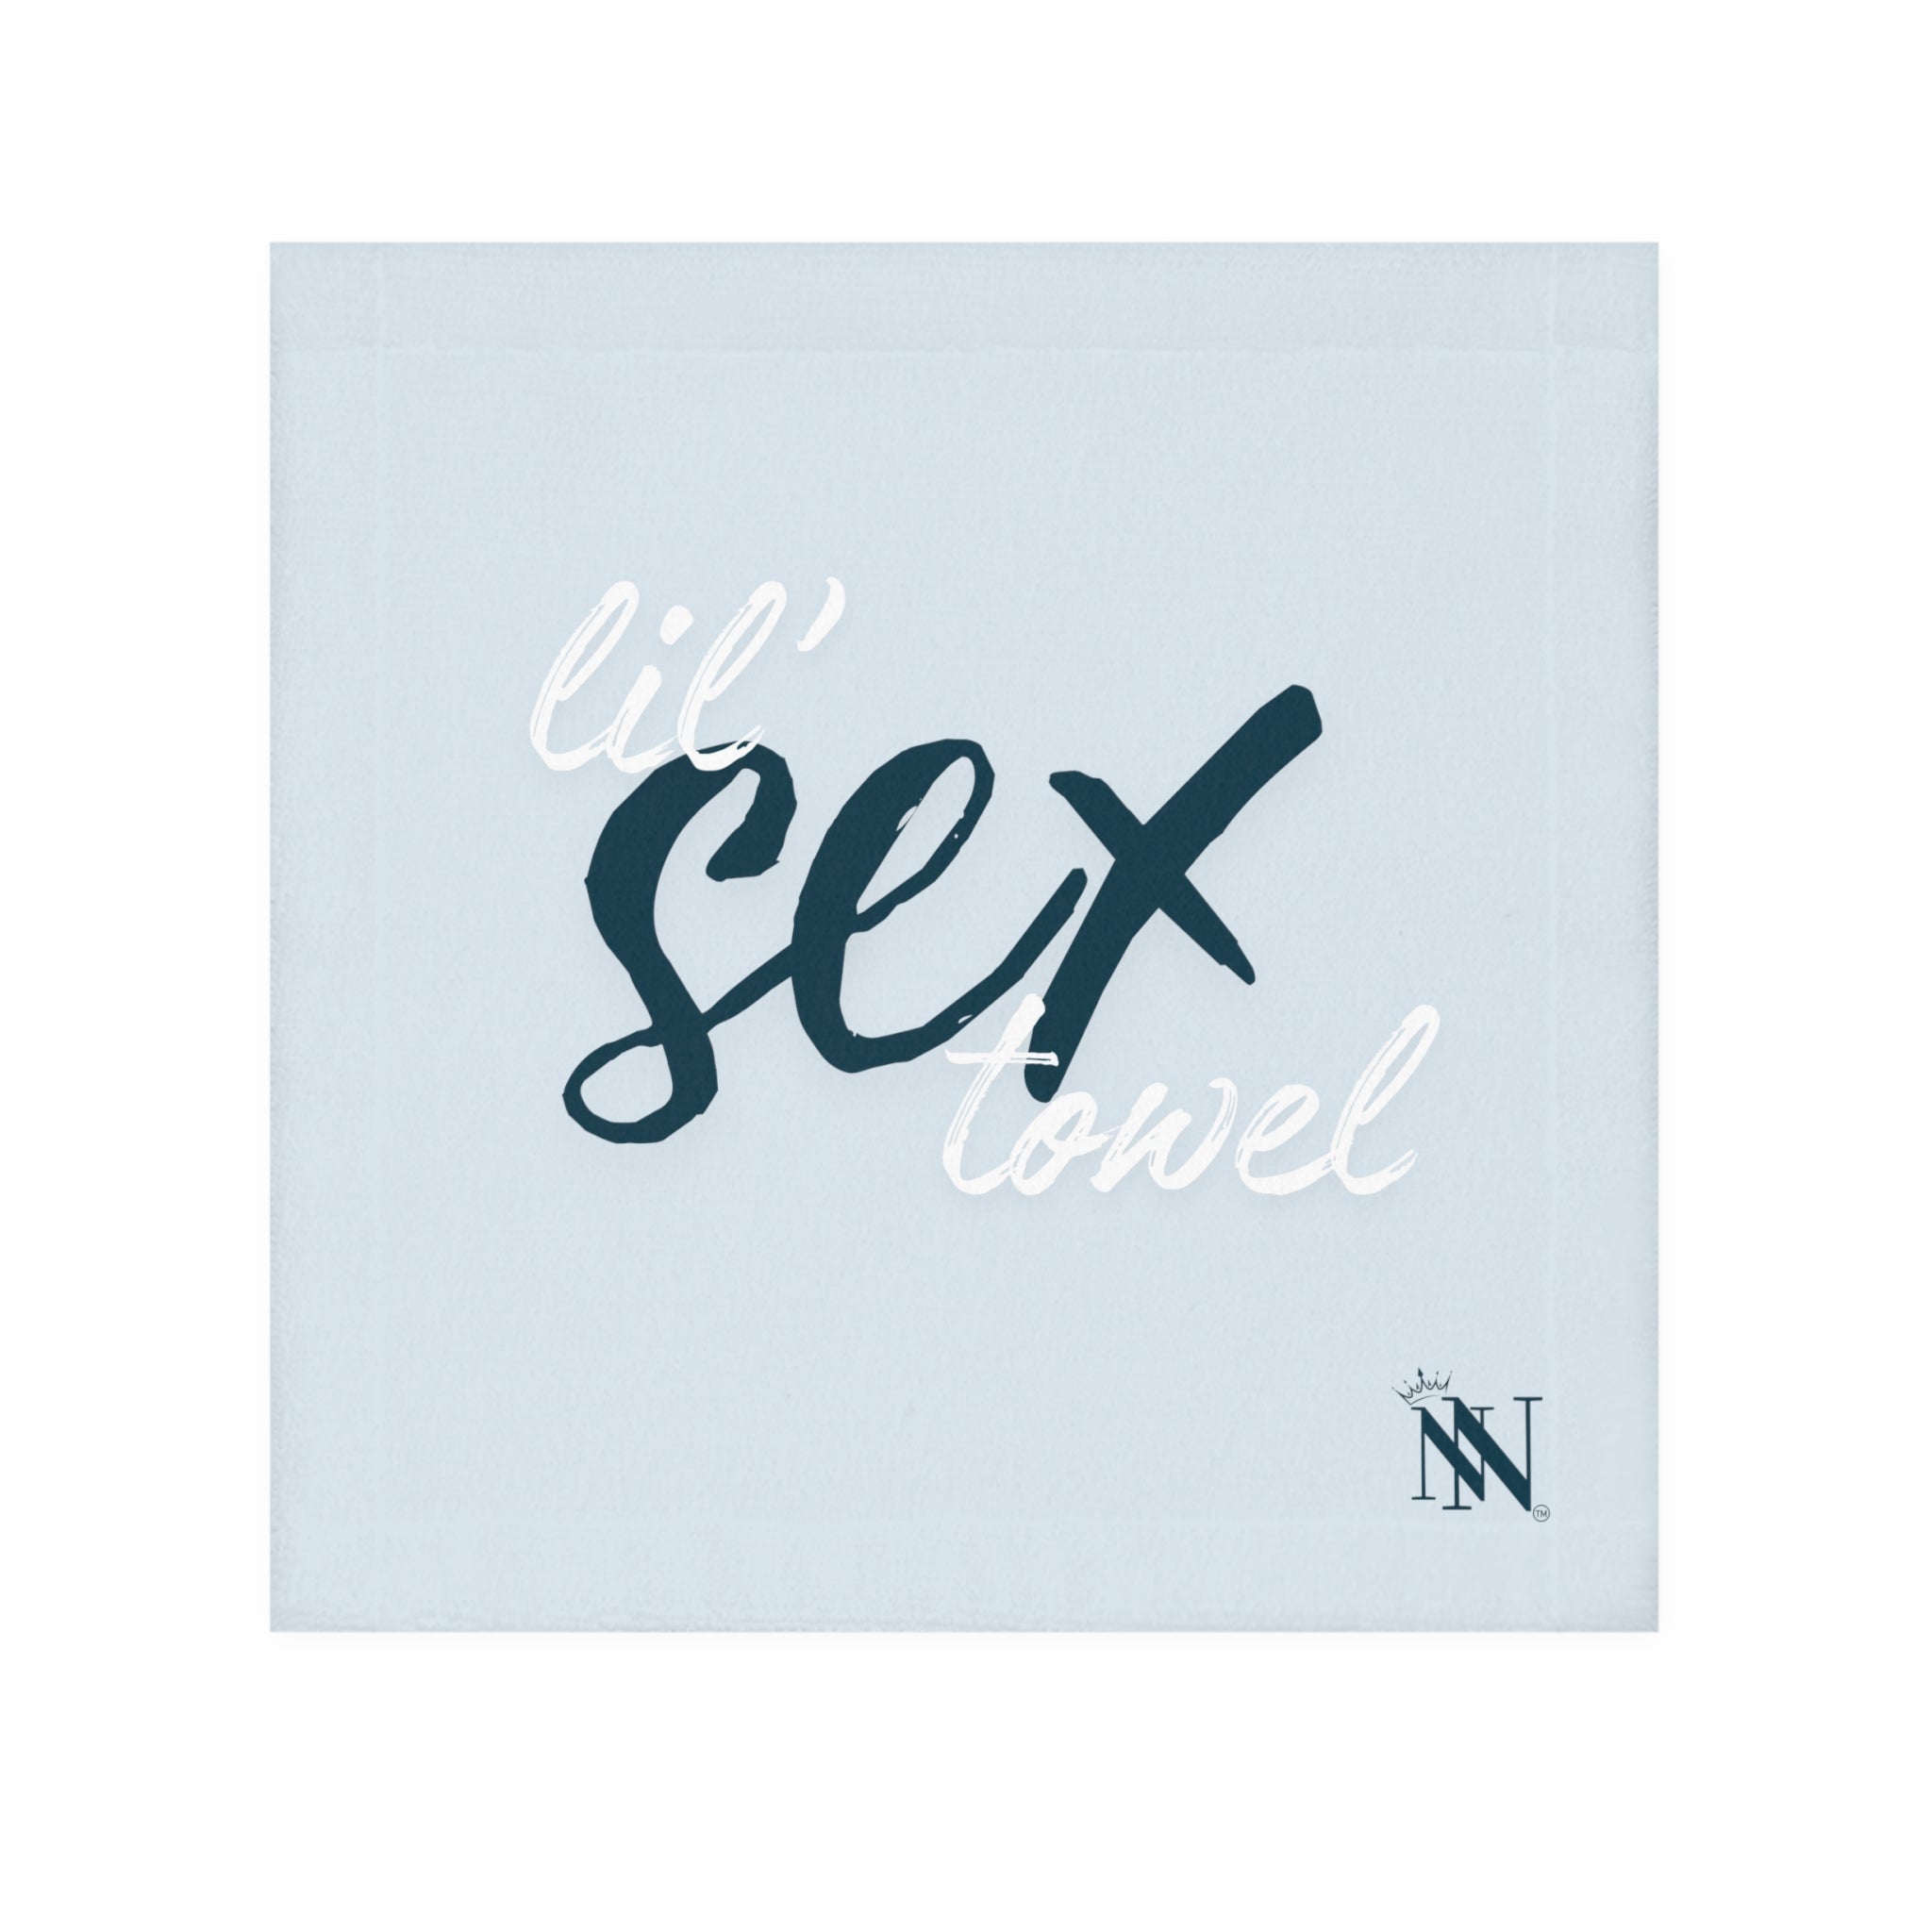 Lils' Sex towel